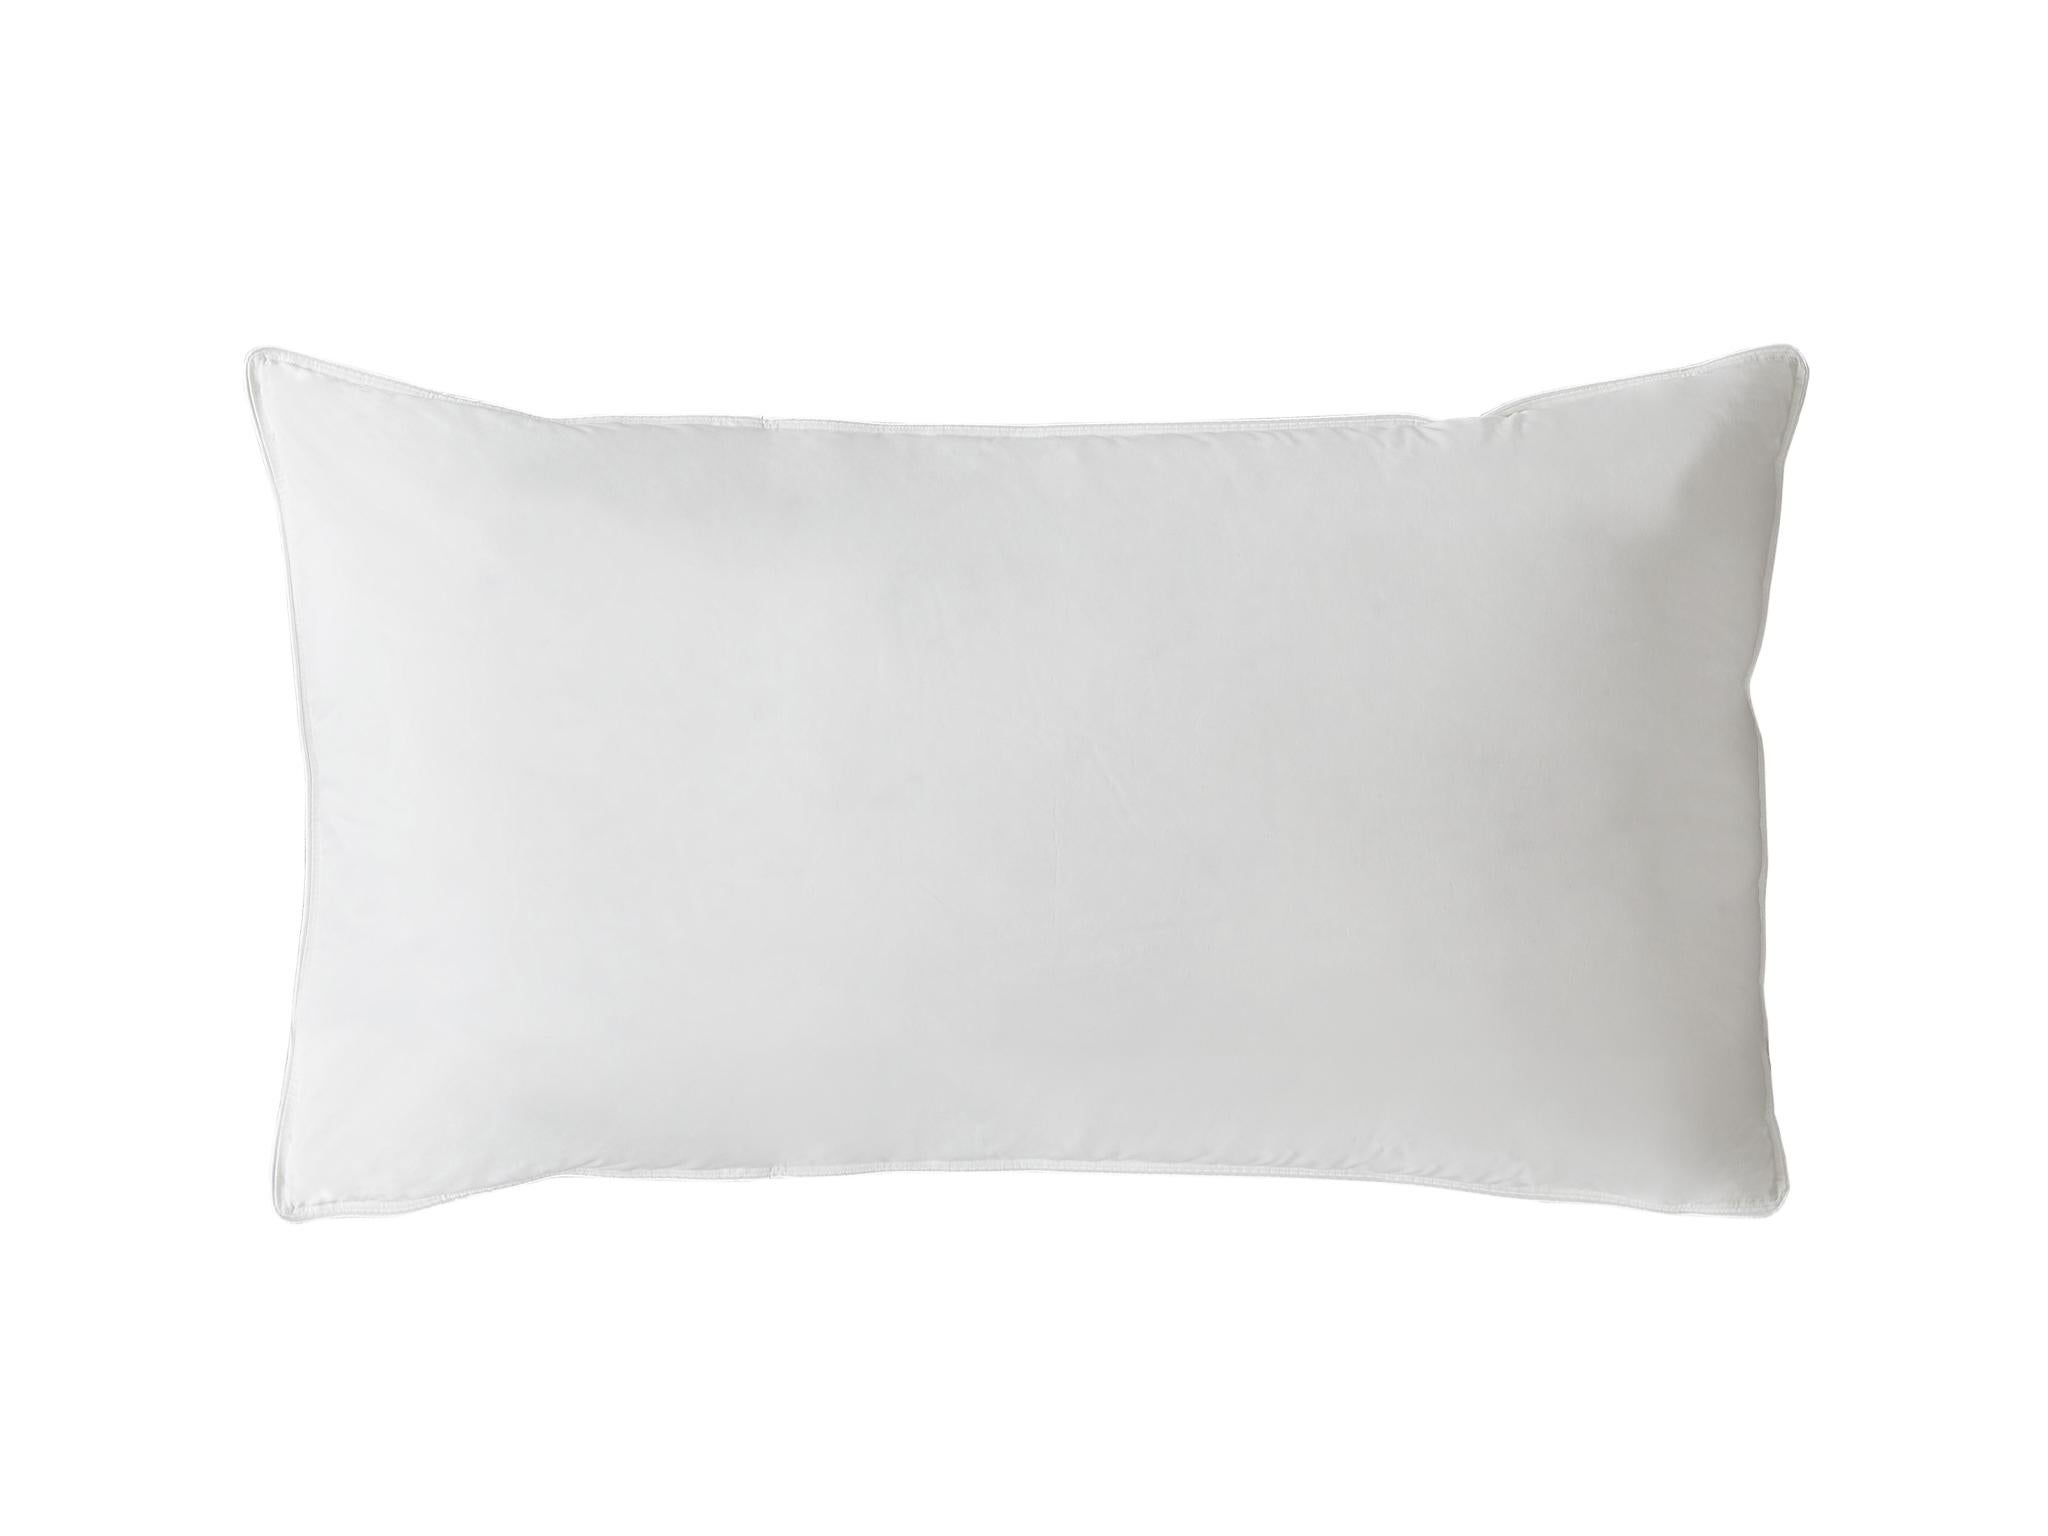 luxury pillows uk